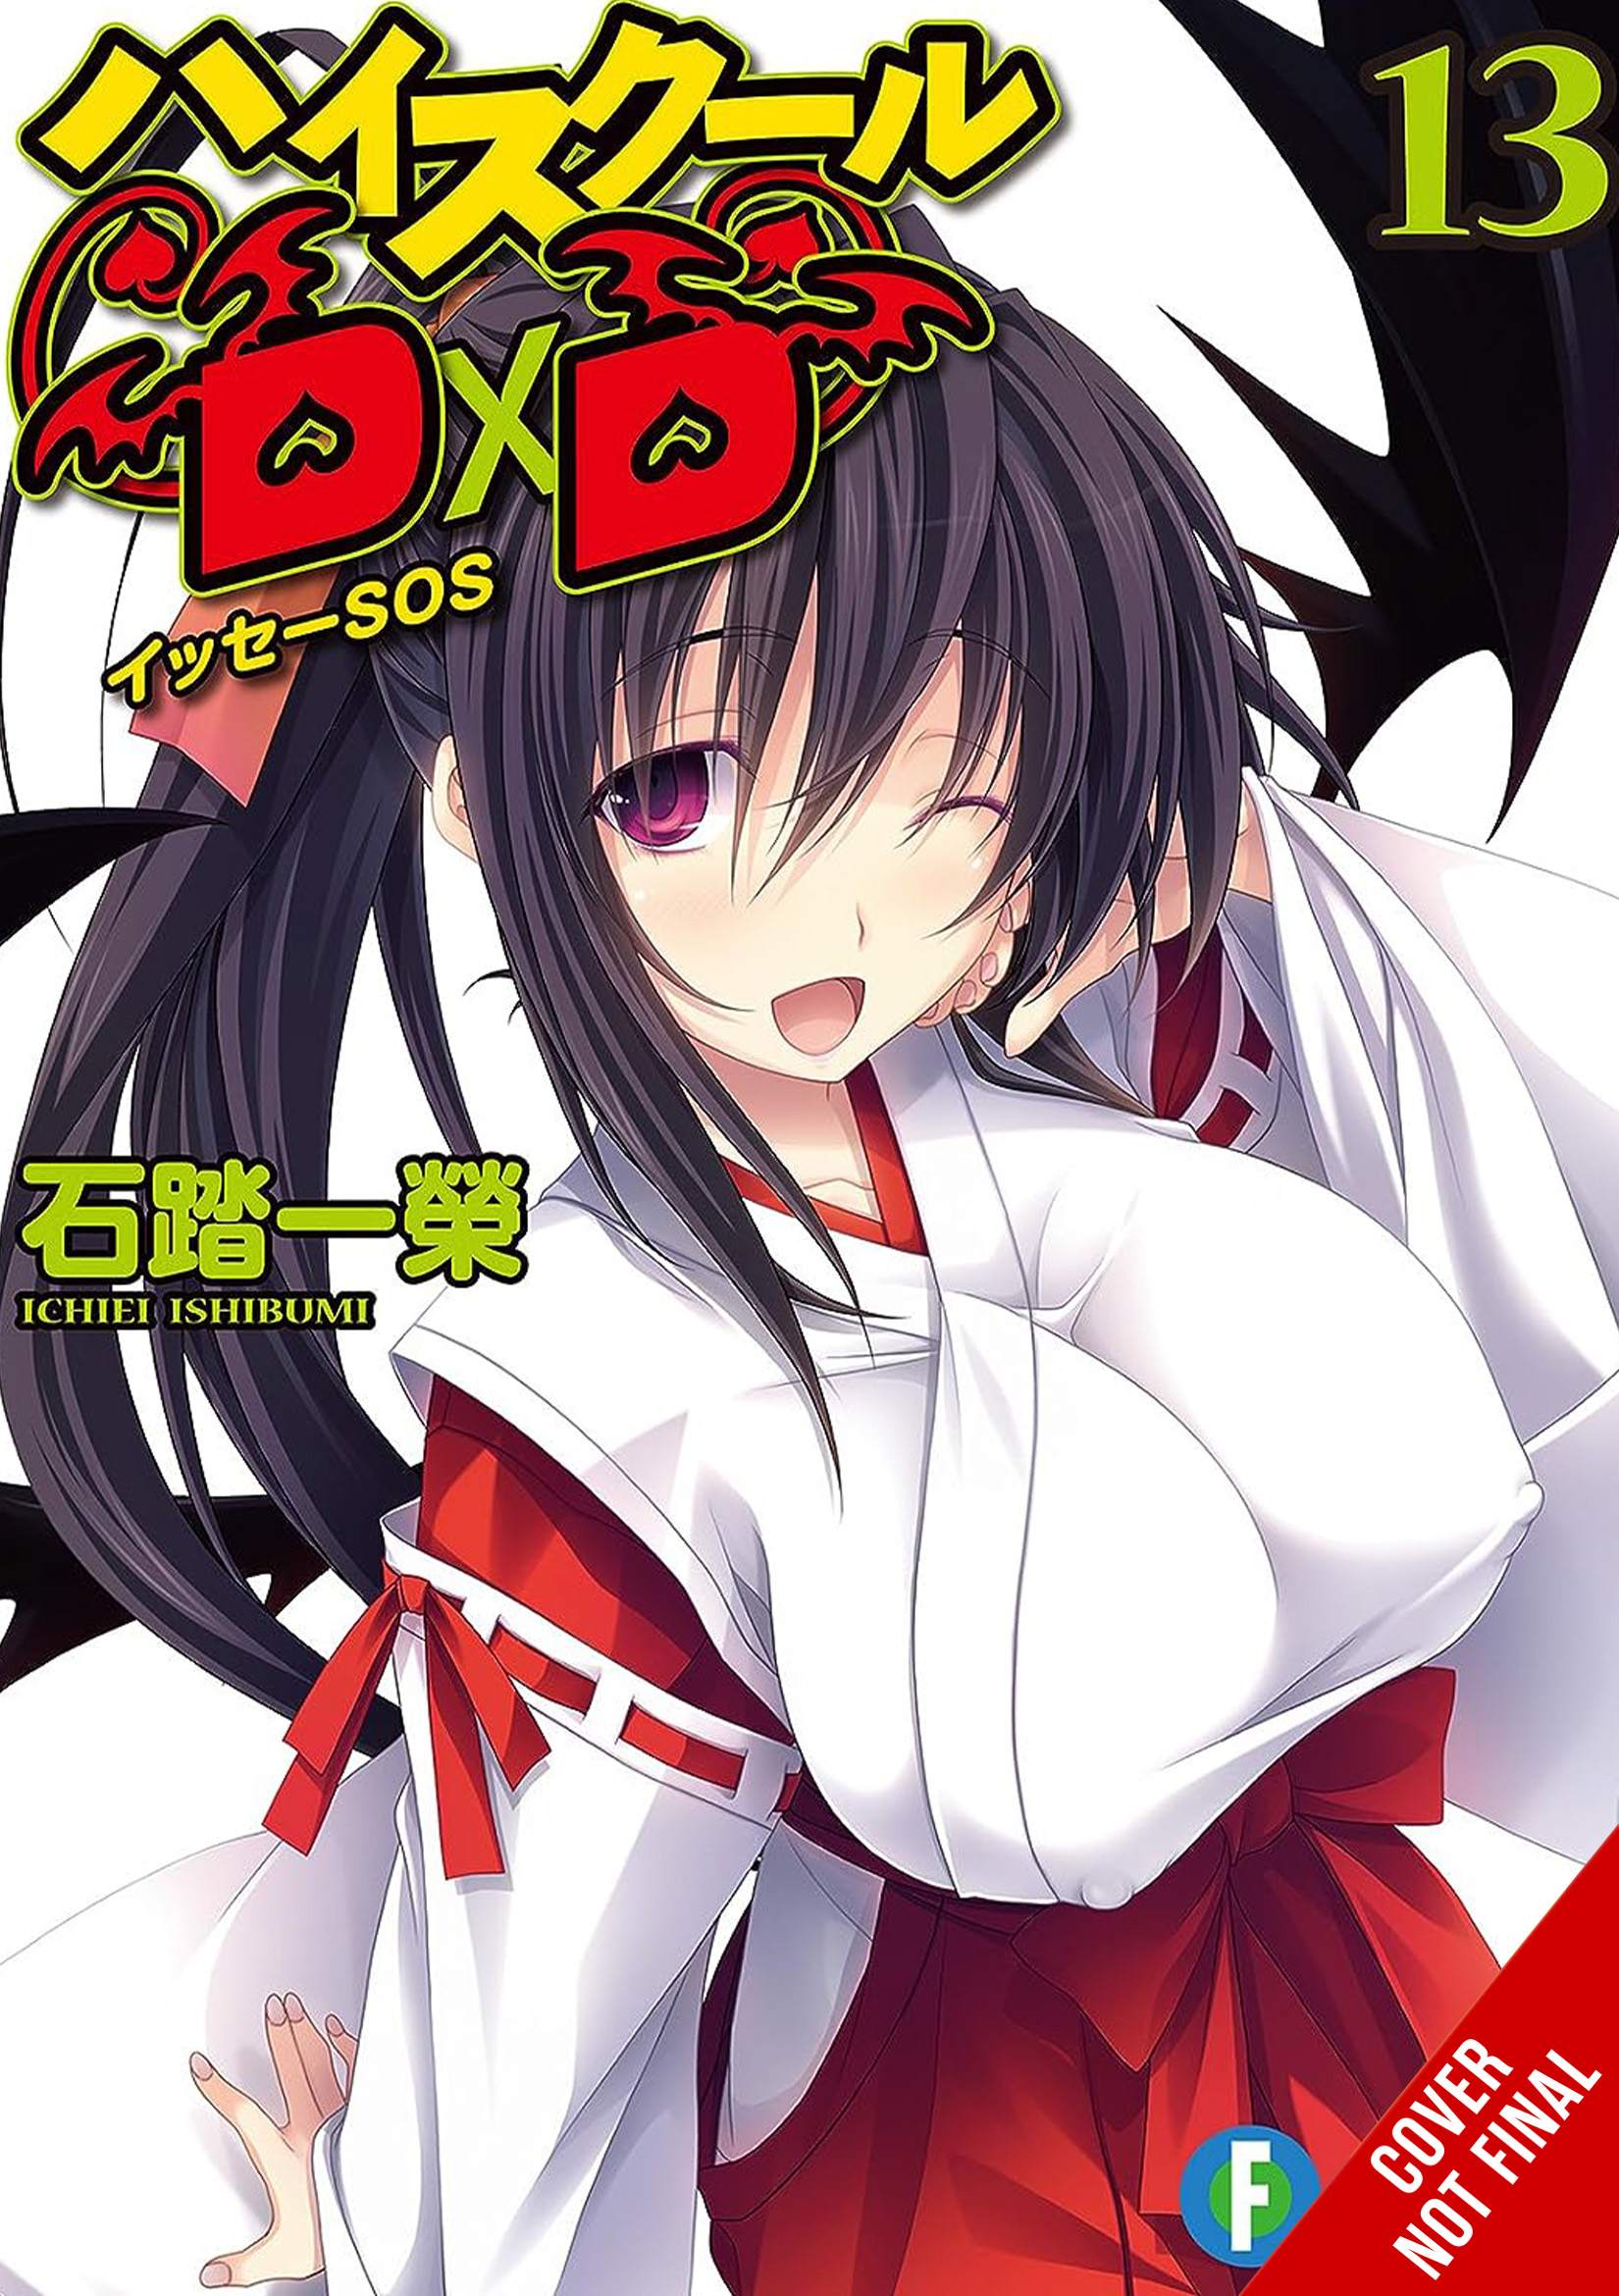 High School DXD Light Novel Volume 13